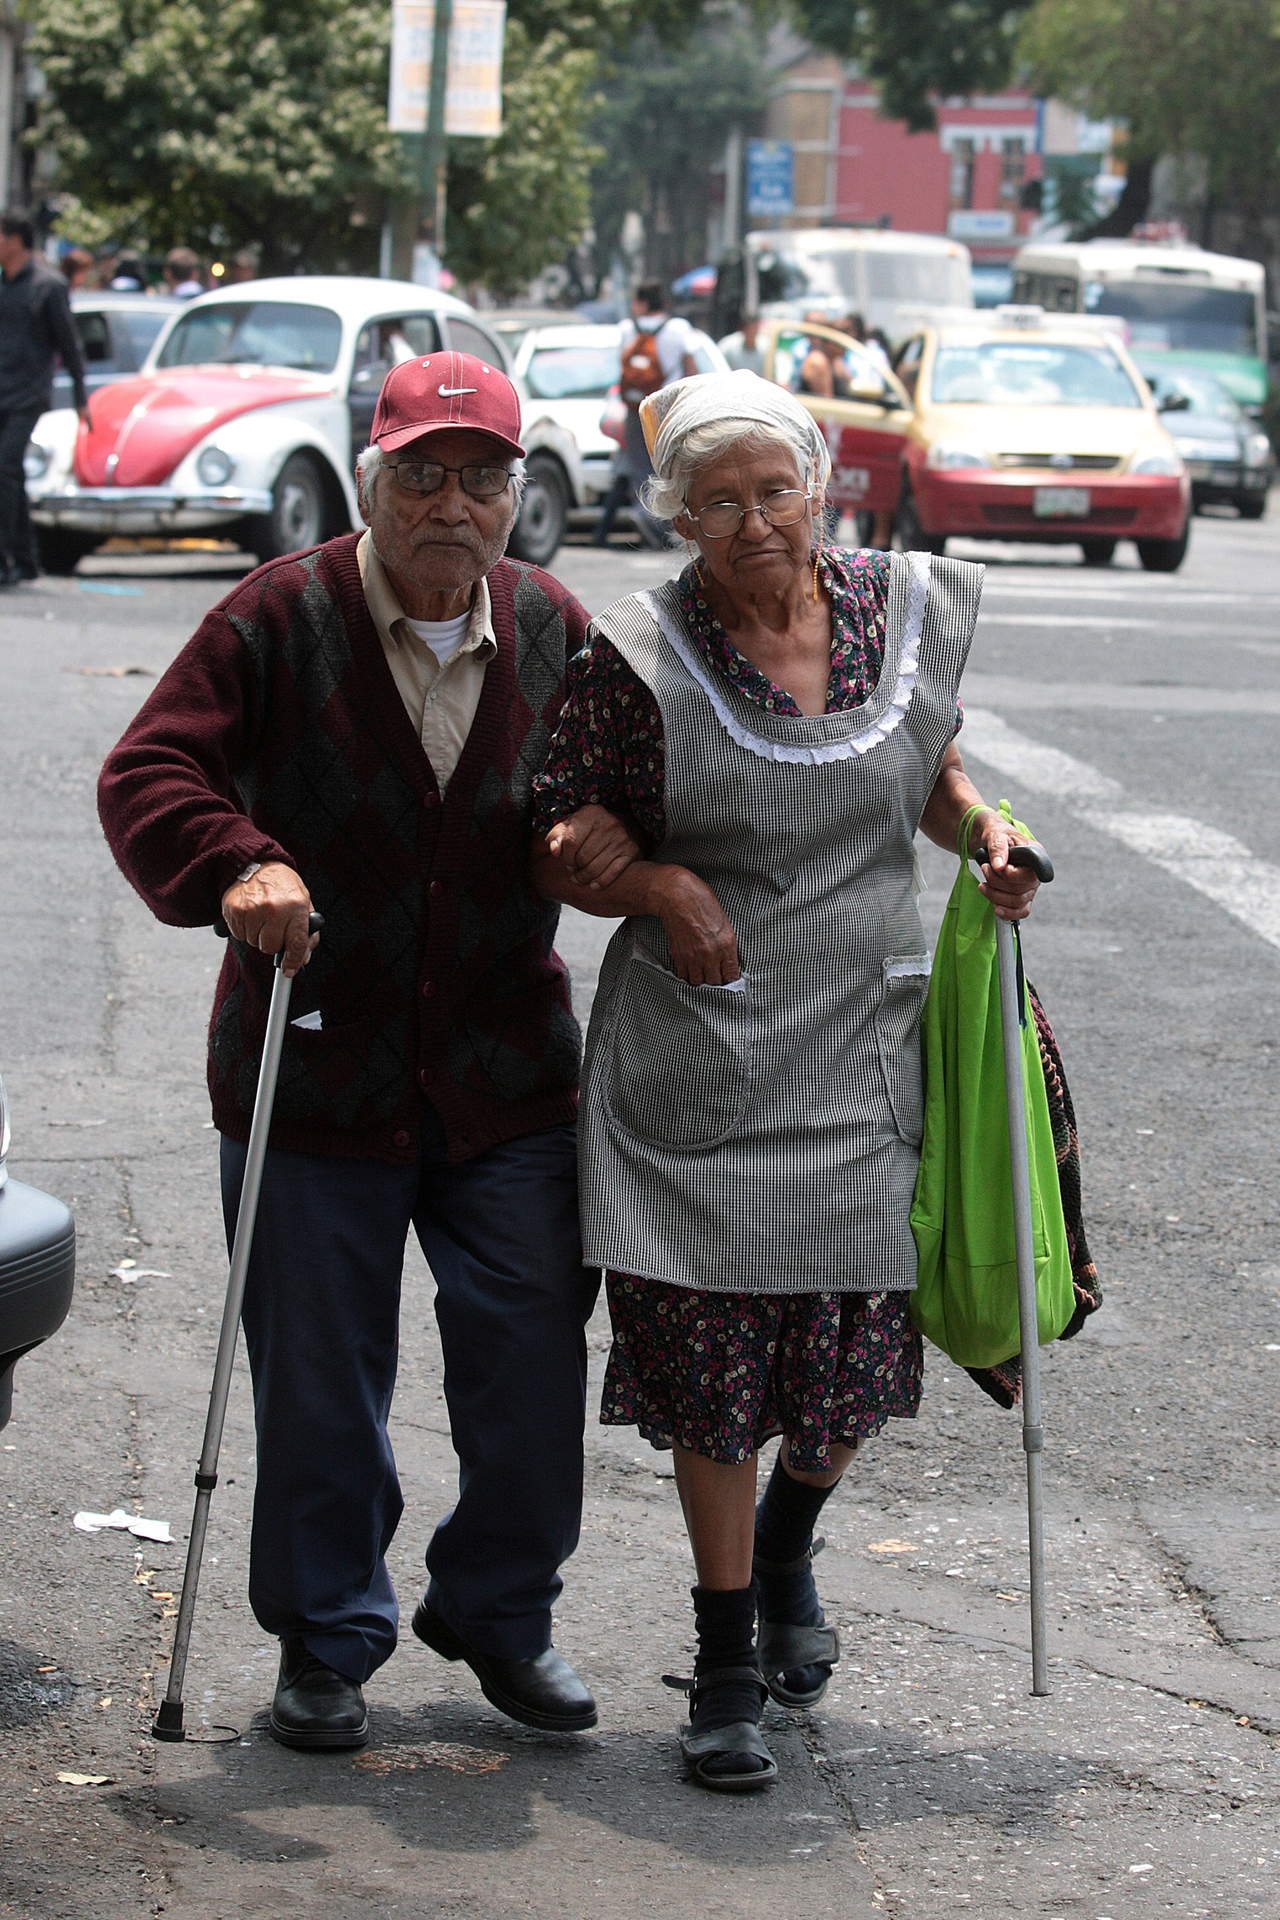 En México, sólo uno de cada cuatro adultos mayores (de 65 años o más) cuenta con una pensión contributiva del Sistema de Ahorro para el Retiro (SAR), debido a la alta informalidad en el mercado laboral. (ARCHIVO)